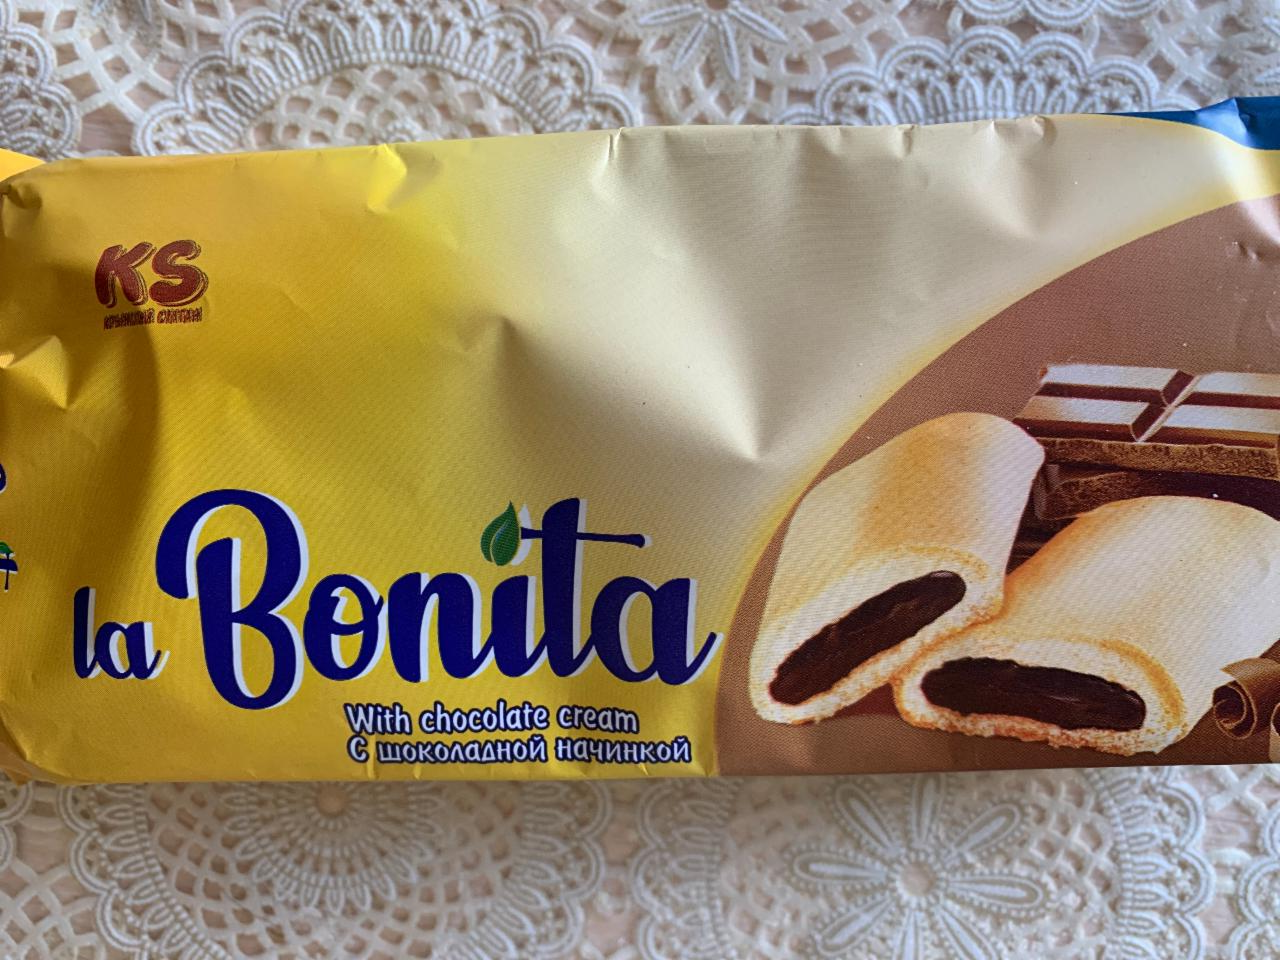 Фото - Печенье сдобное с шоколадной начинкой la Bonita Крымский султан